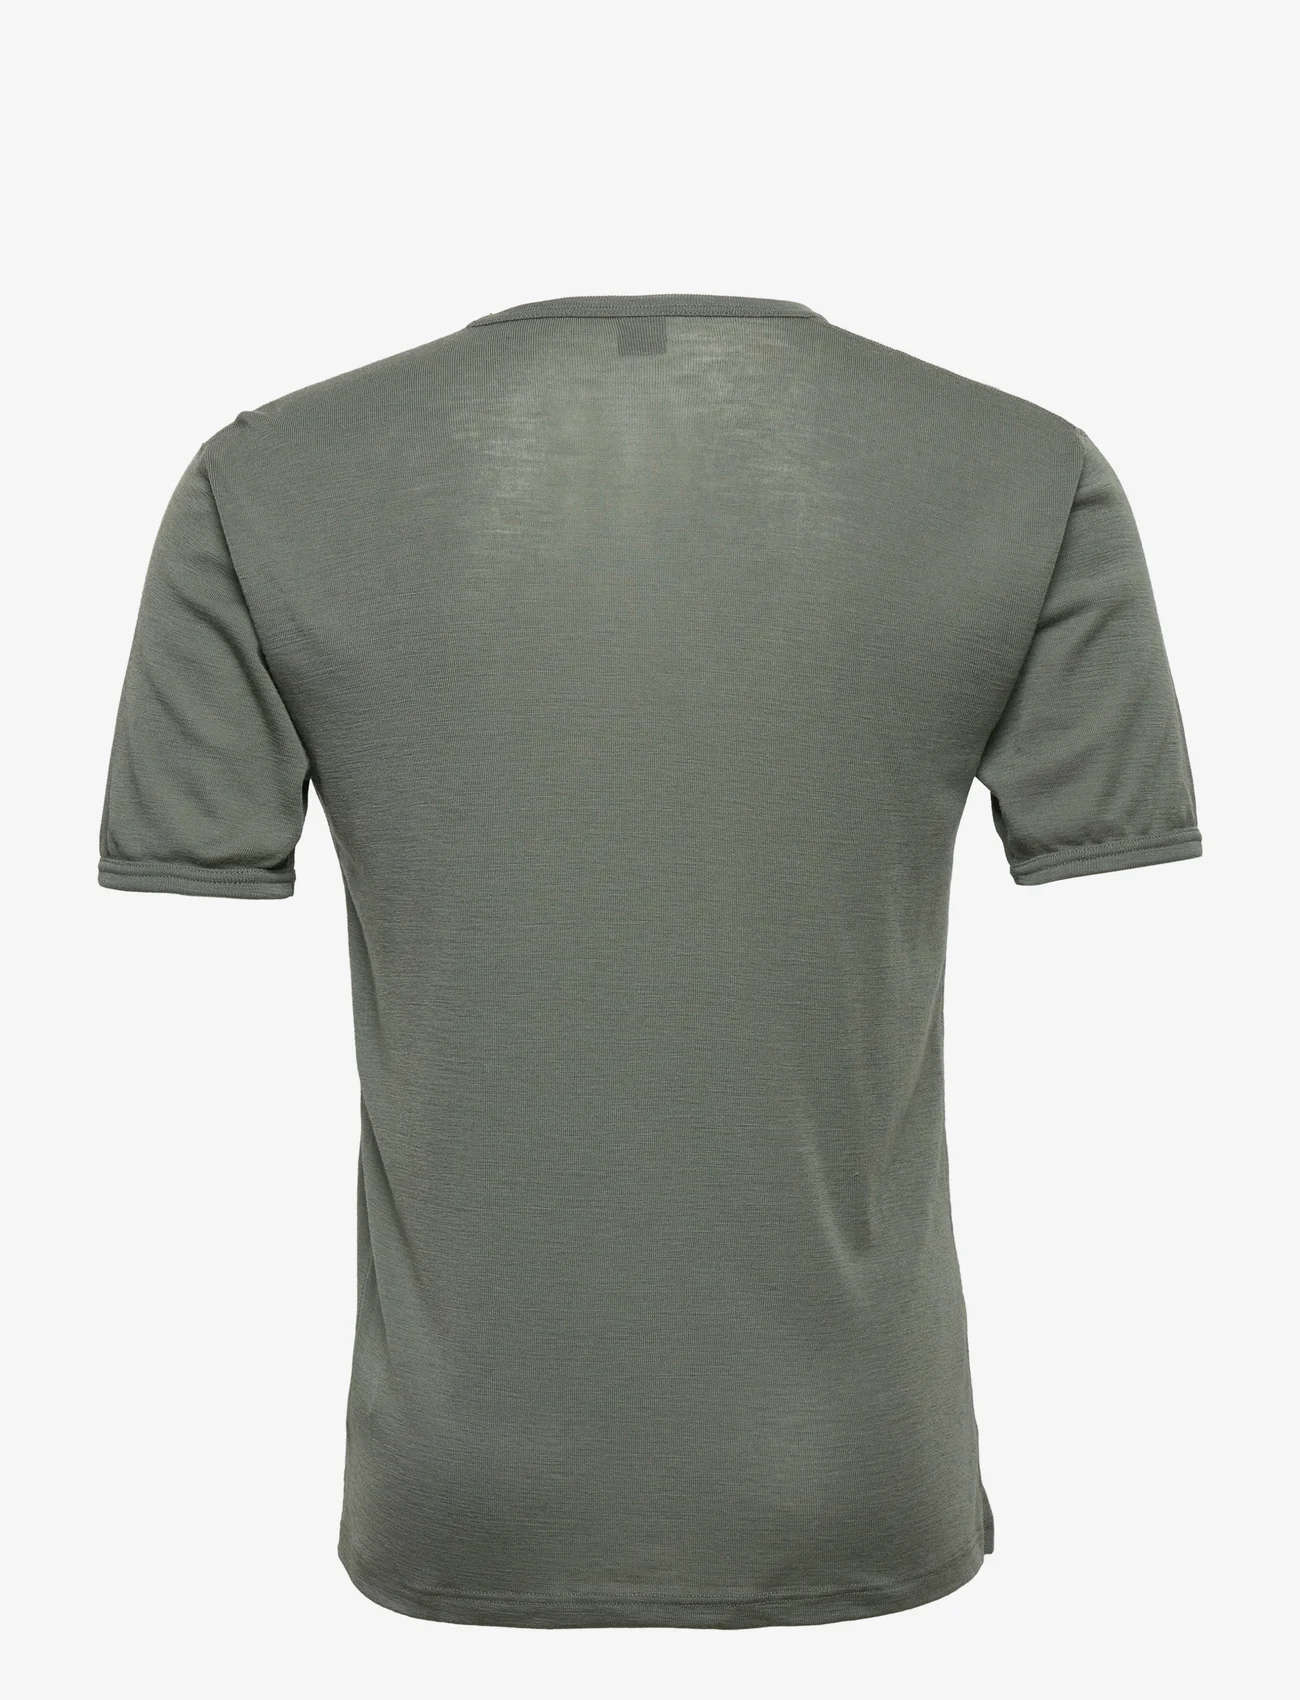 Dovre - DOVRE wool t-shirt - kortermede t-skjorter - grön - 1